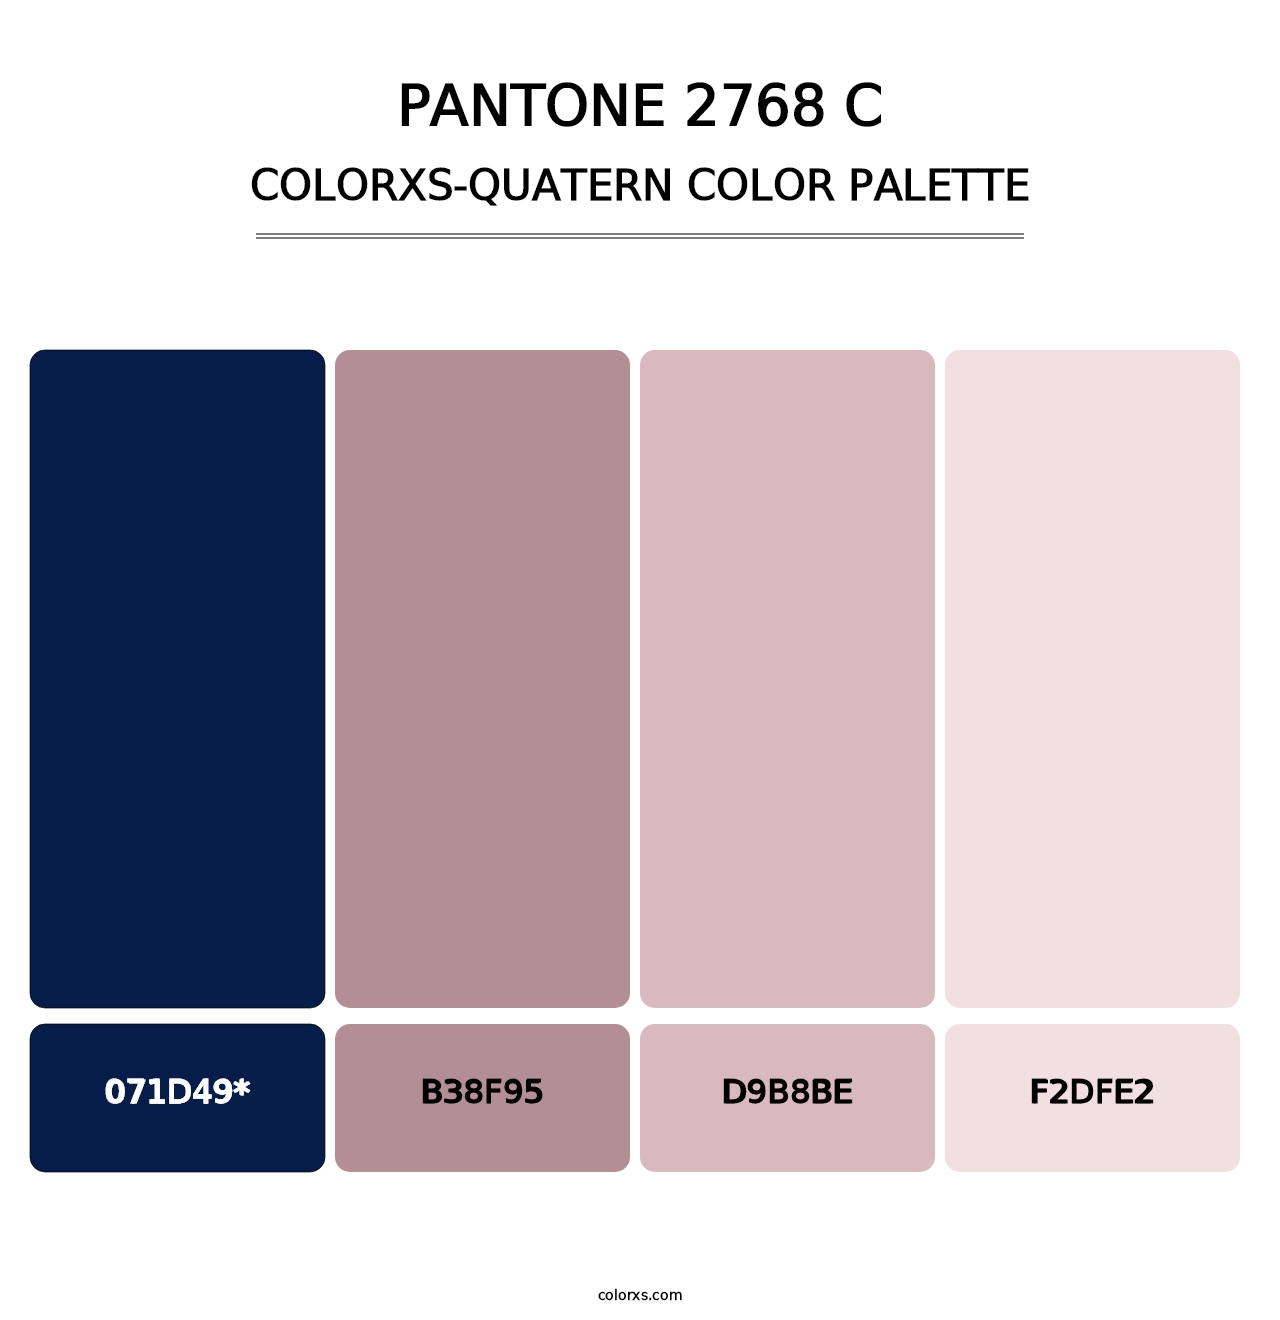 PANTONE 2768 C - Colorxs Quatern Palette